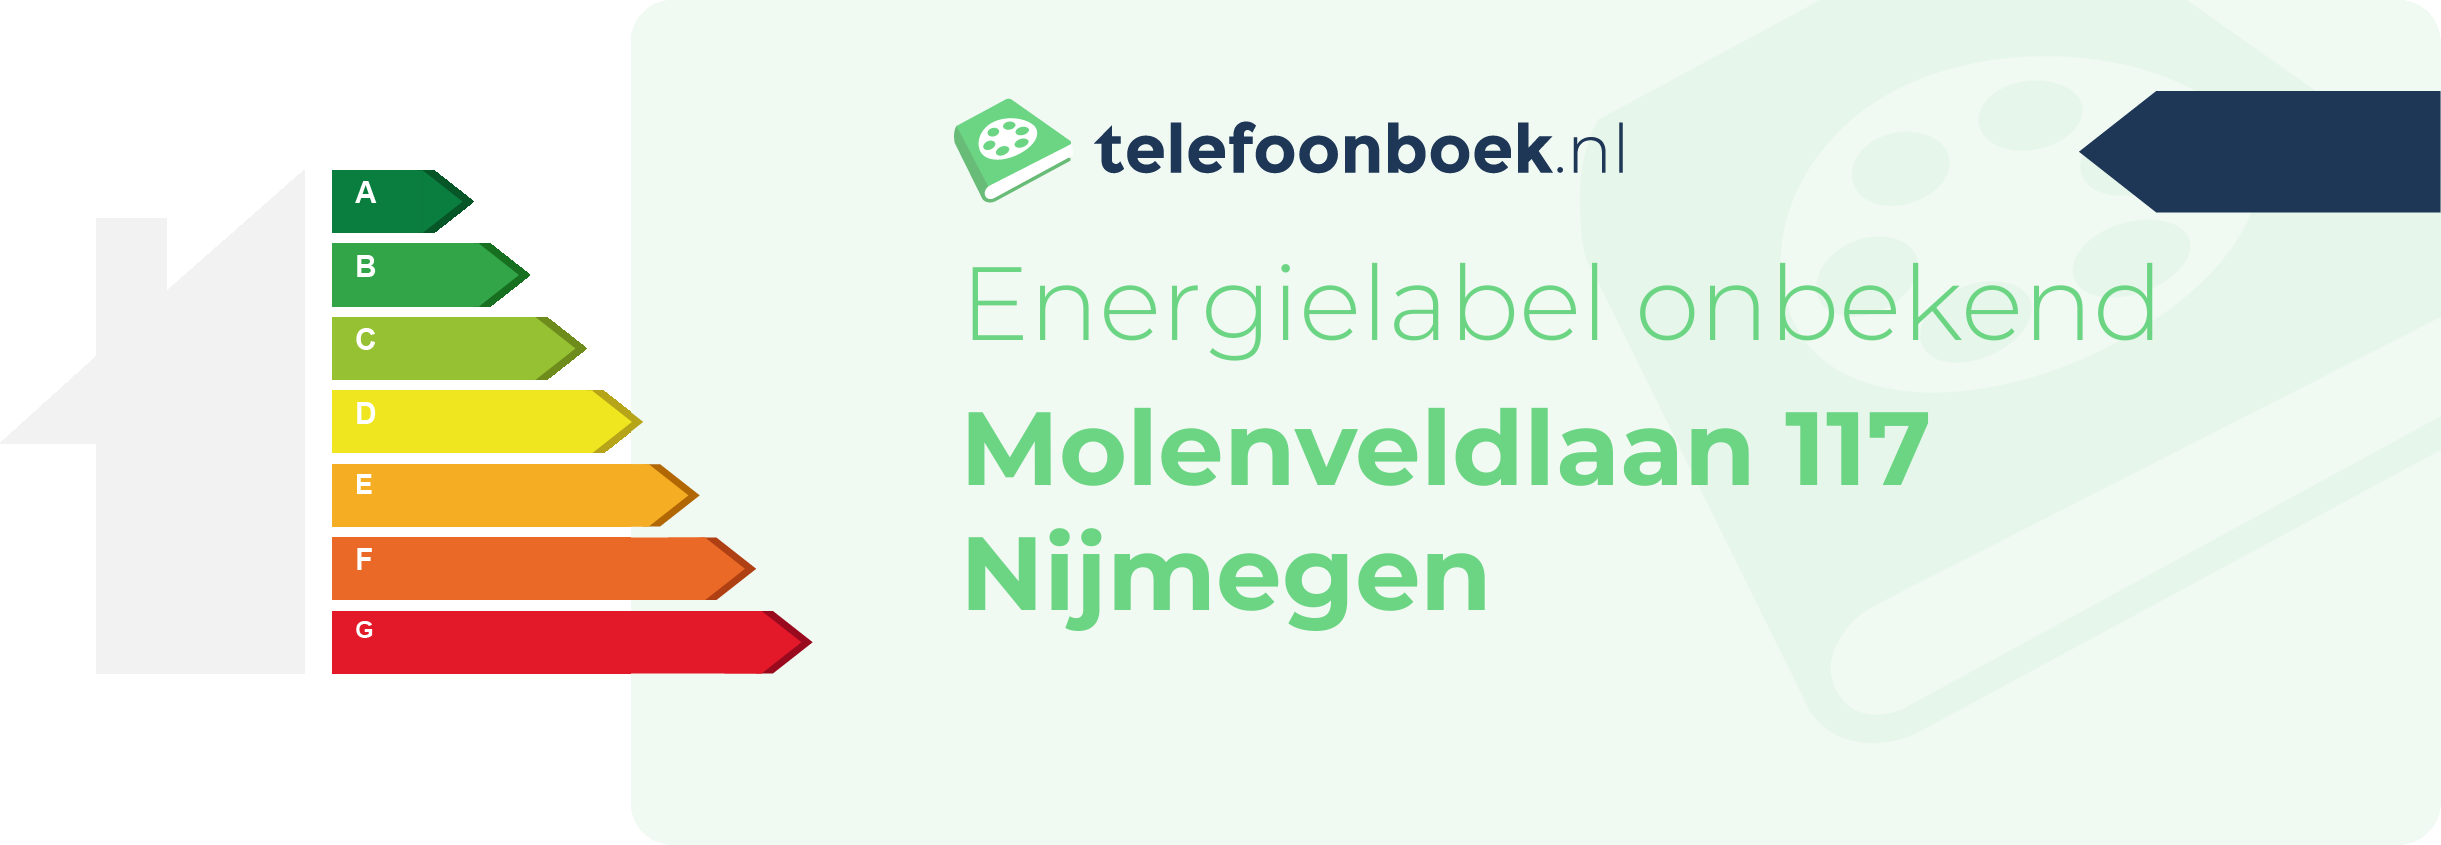 Energielabel Molenveldlaan 117 Nijmegen